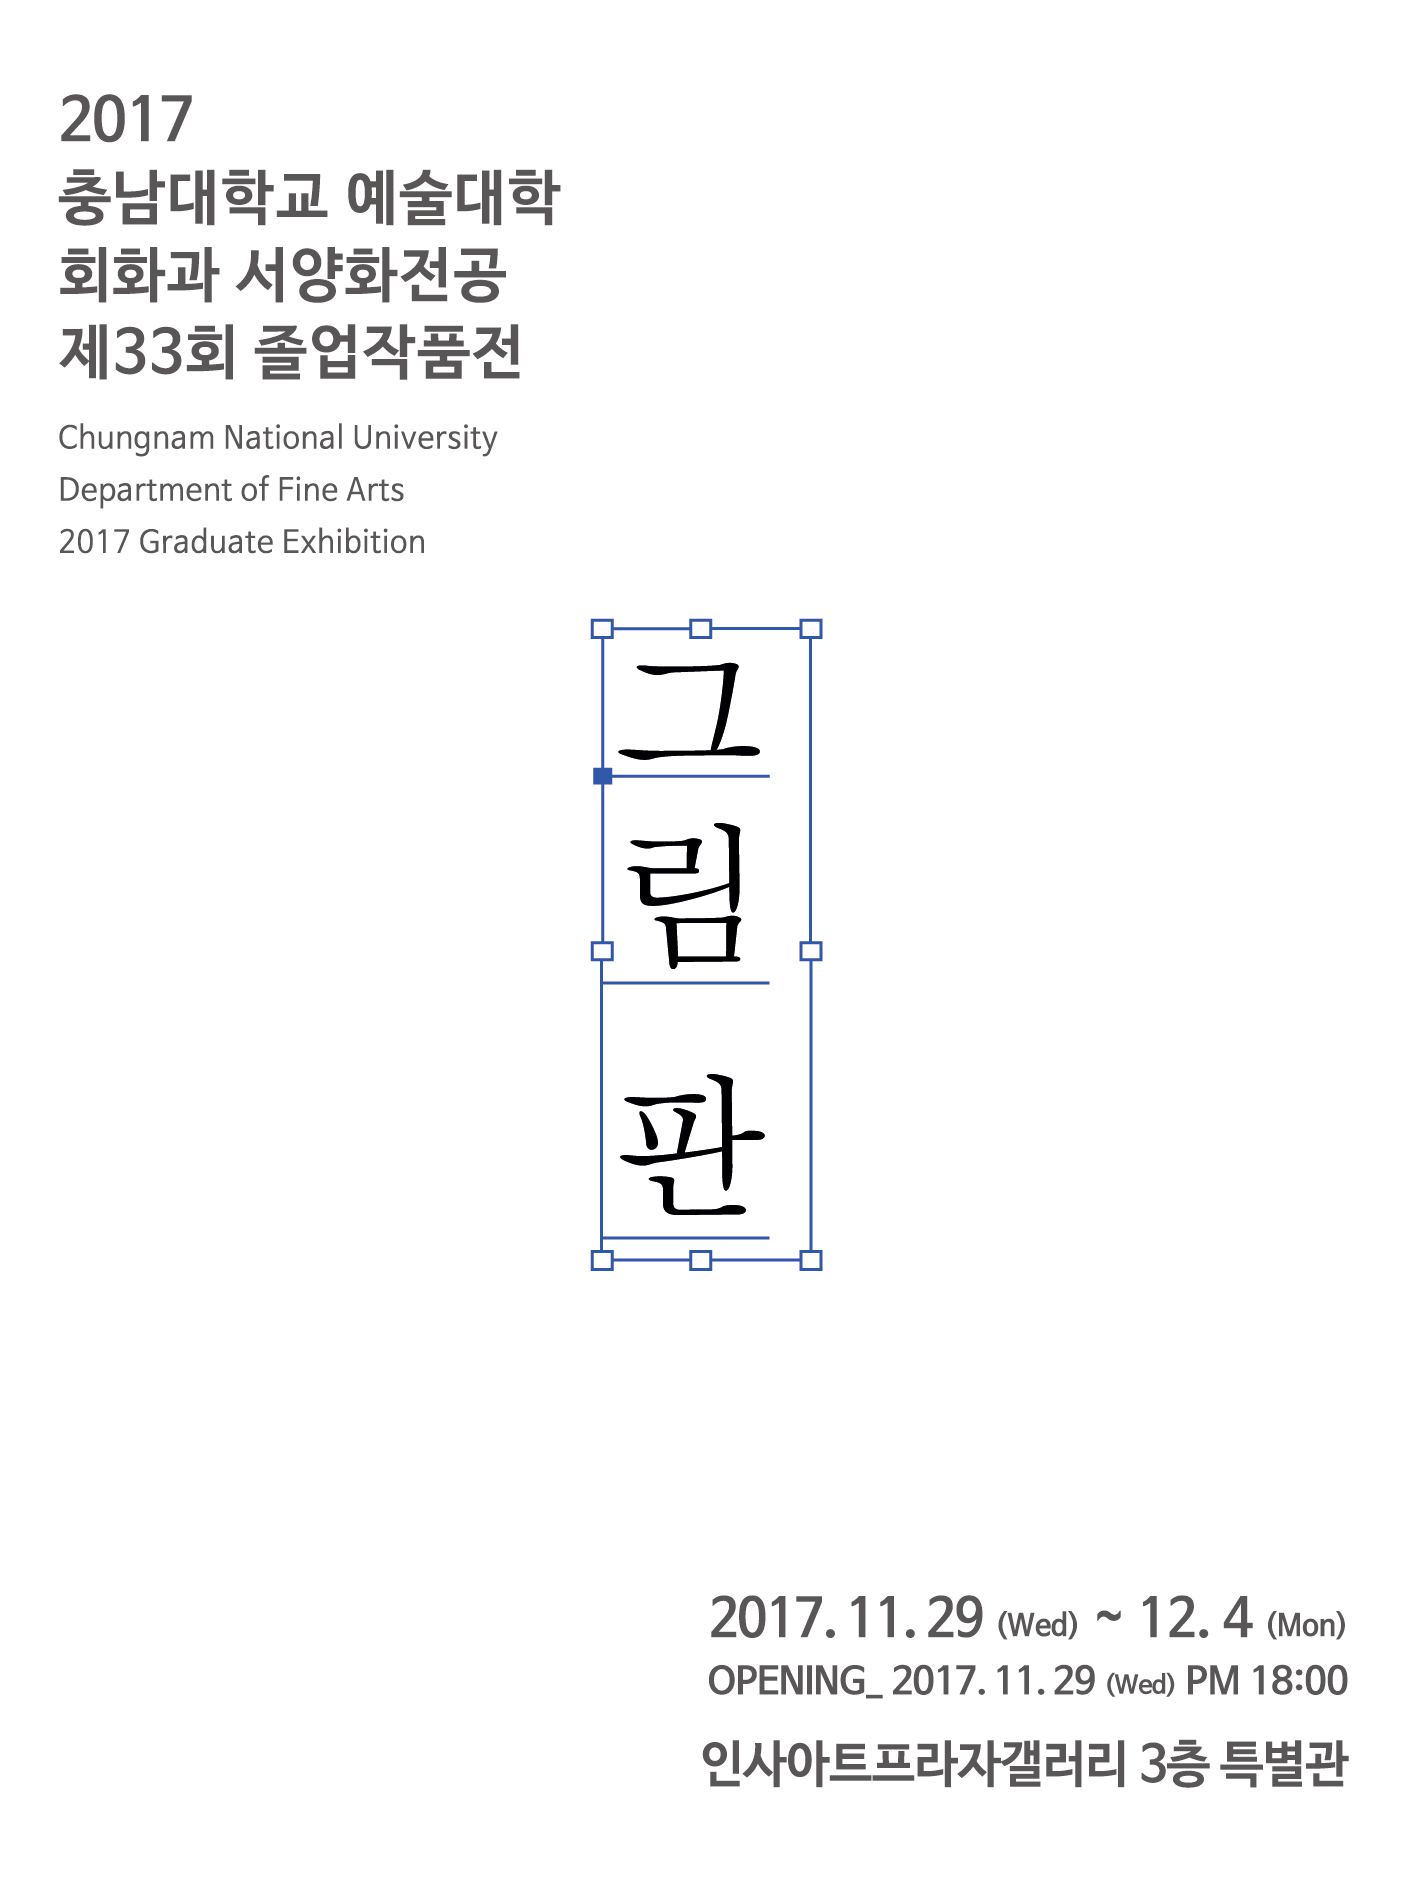 충남대 서양화 현수막.jpg